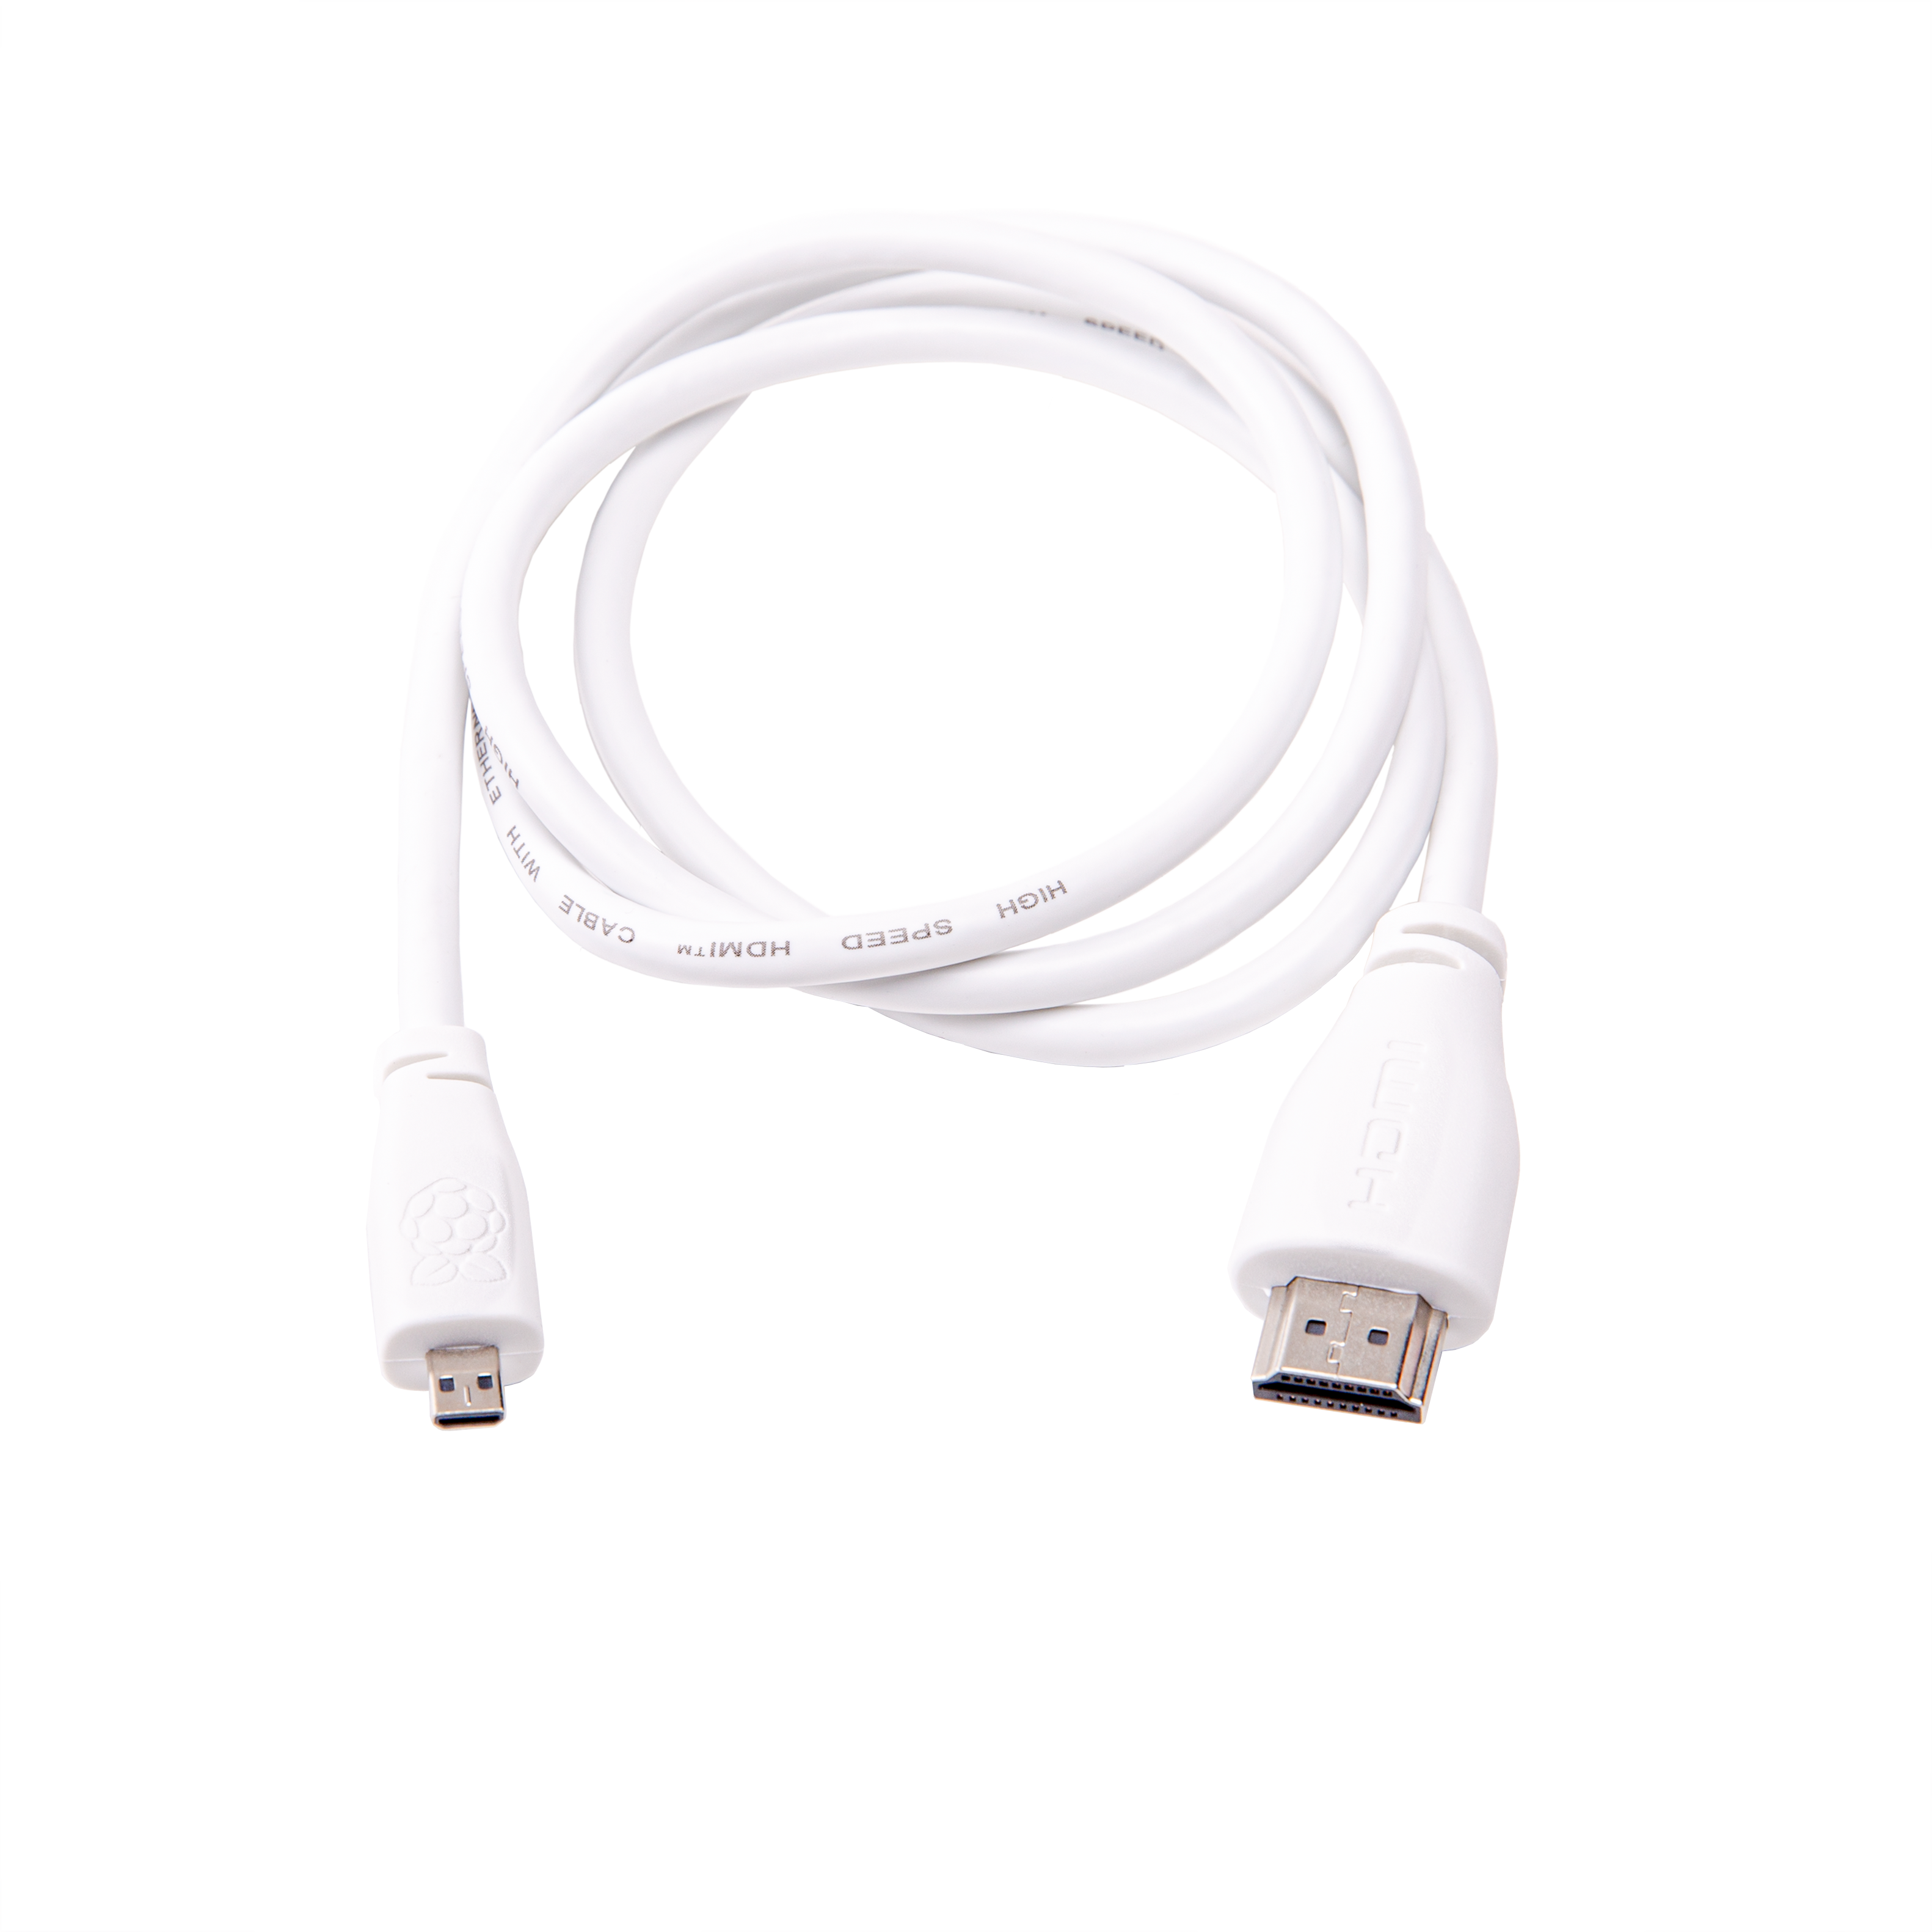 Câble micro-HDMI vers mâle standard Raspberry Pi (blanc 1m)